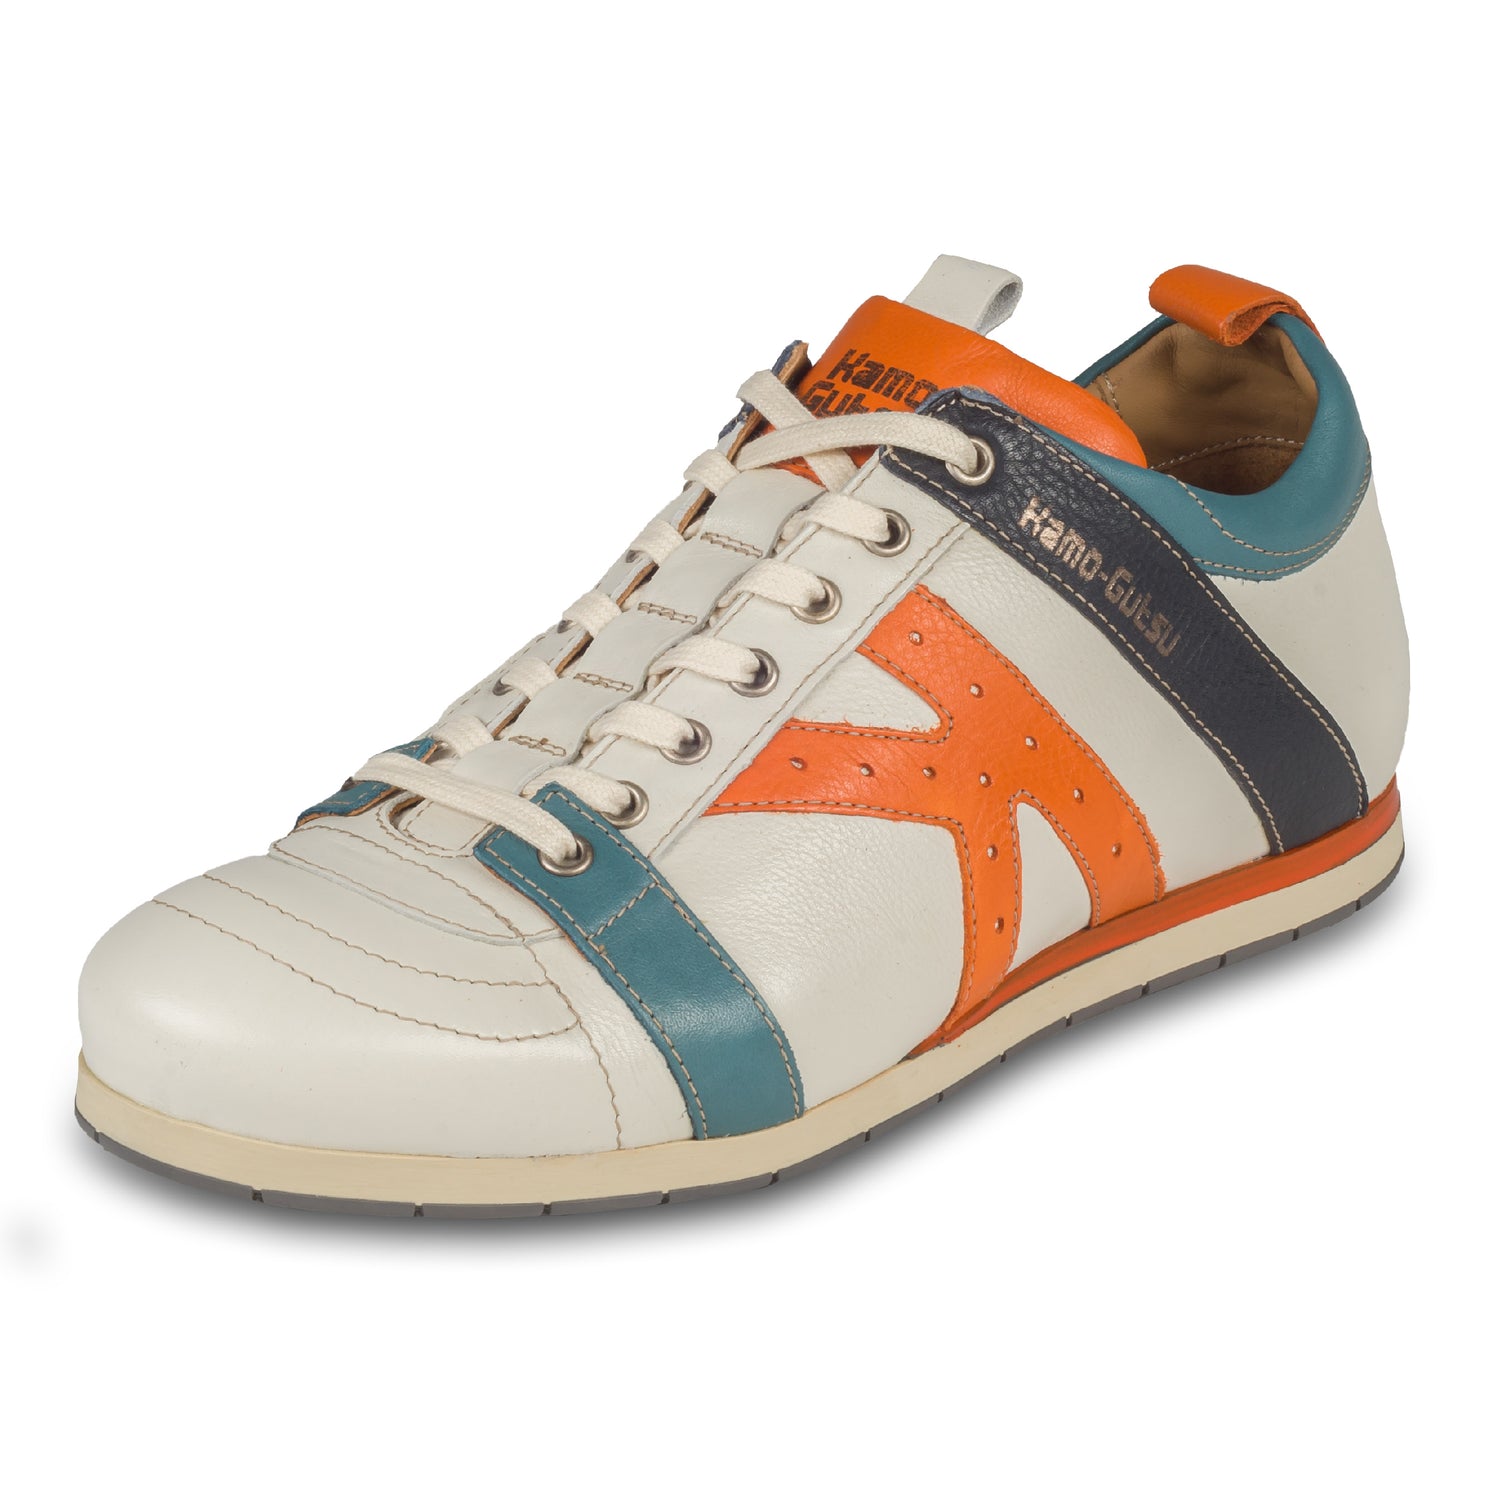 KAMO-GUTSU Herren Leder Sneaker, weiß mit orange und blau, Modell TIFO-042 gel ice arancio. Handgefertigt. Schräge Ansicht linker Schuh.